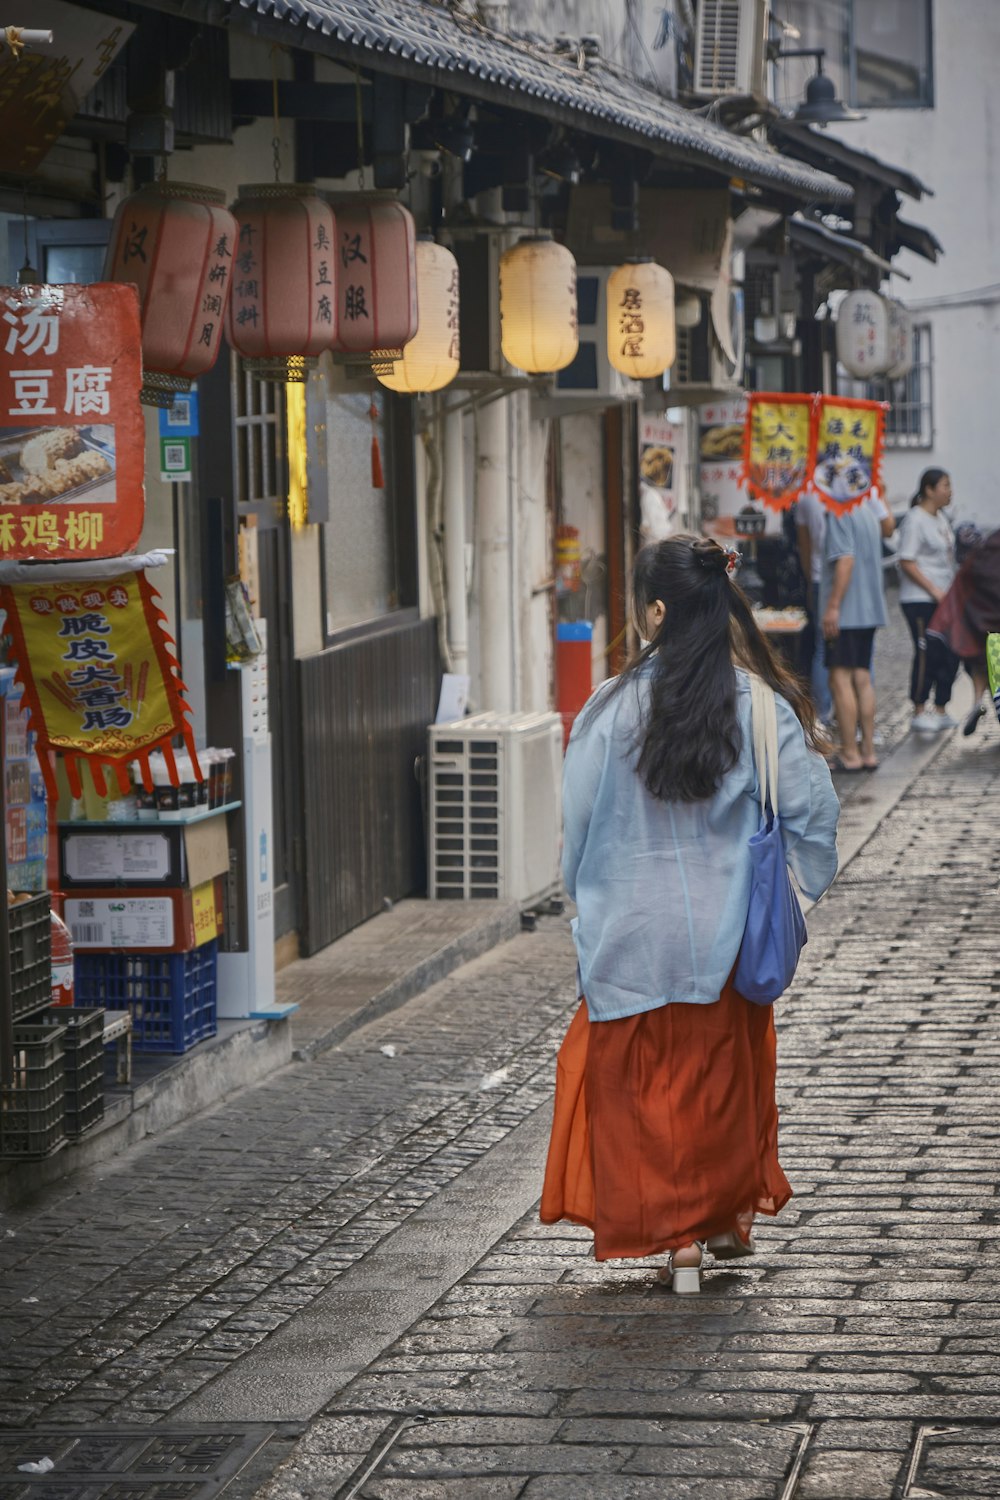 Une femme marchant dans une rue d’une ville asiatique